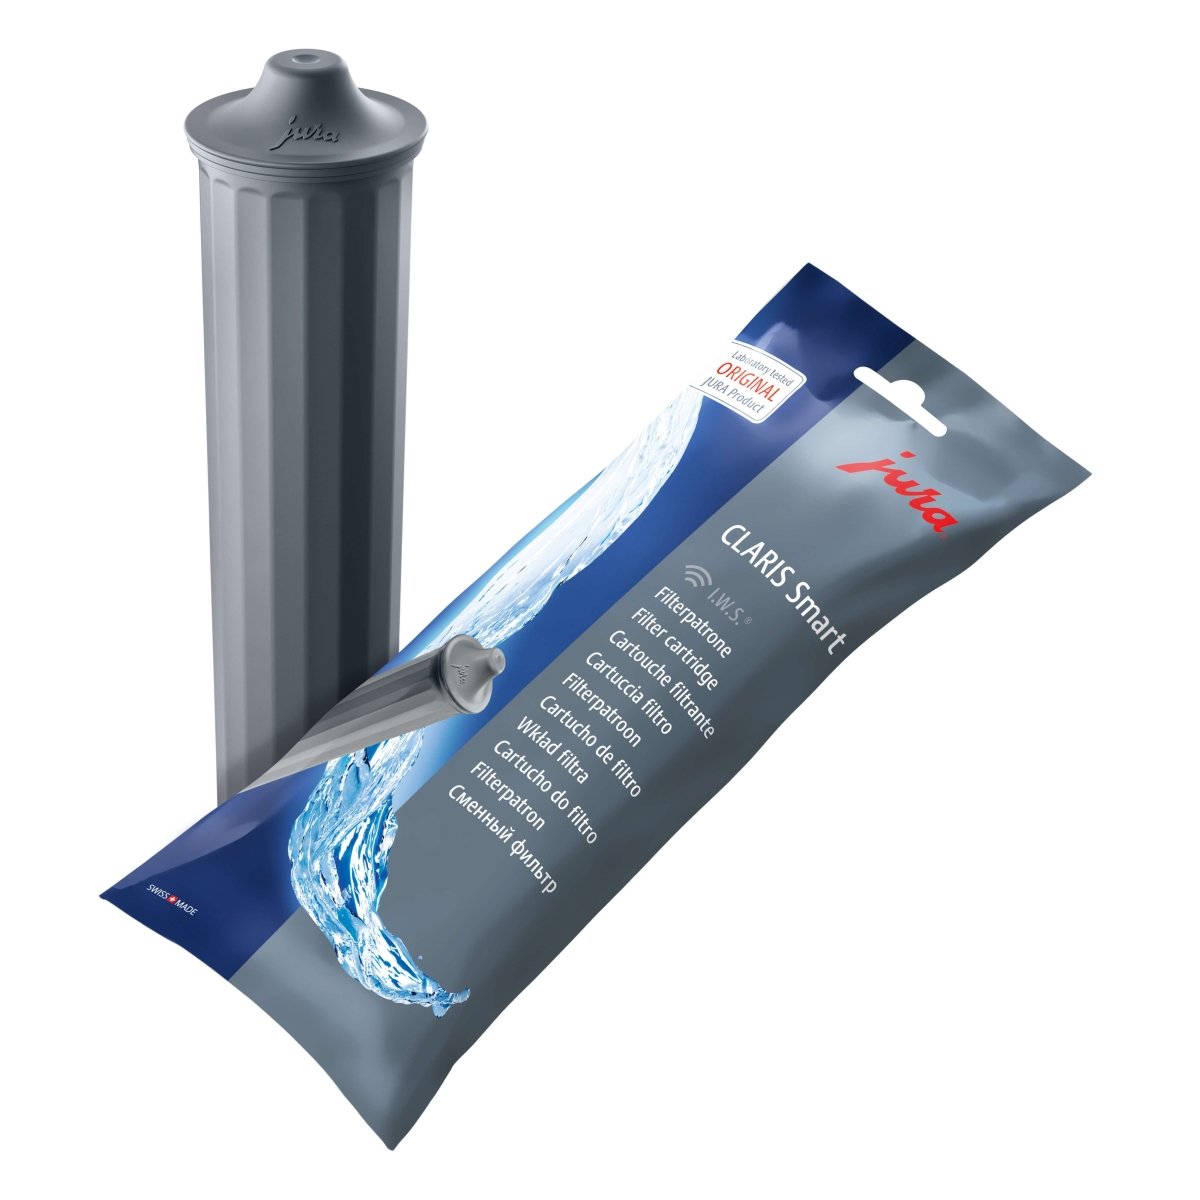 Jura Claris Smart waterfilter per stuk verpakt tot 50 liter water ontkalken Arte dell' espressO 7610917717934